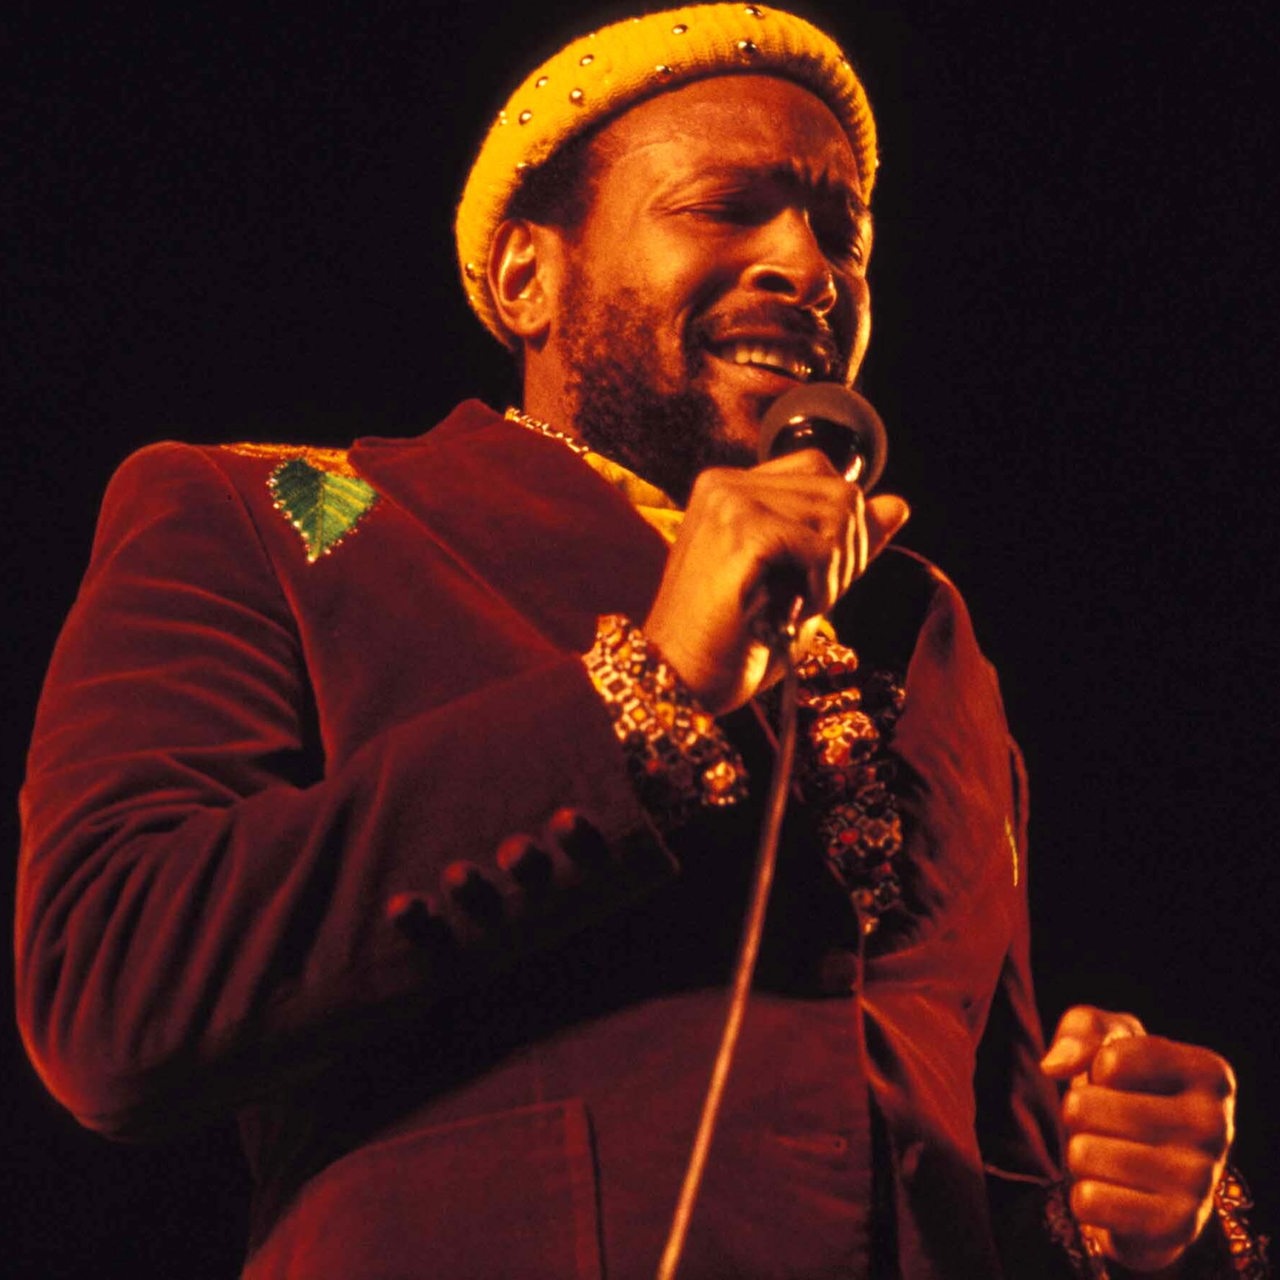 Der Sänger Marvin Gaye 1984 auf der Bühne.